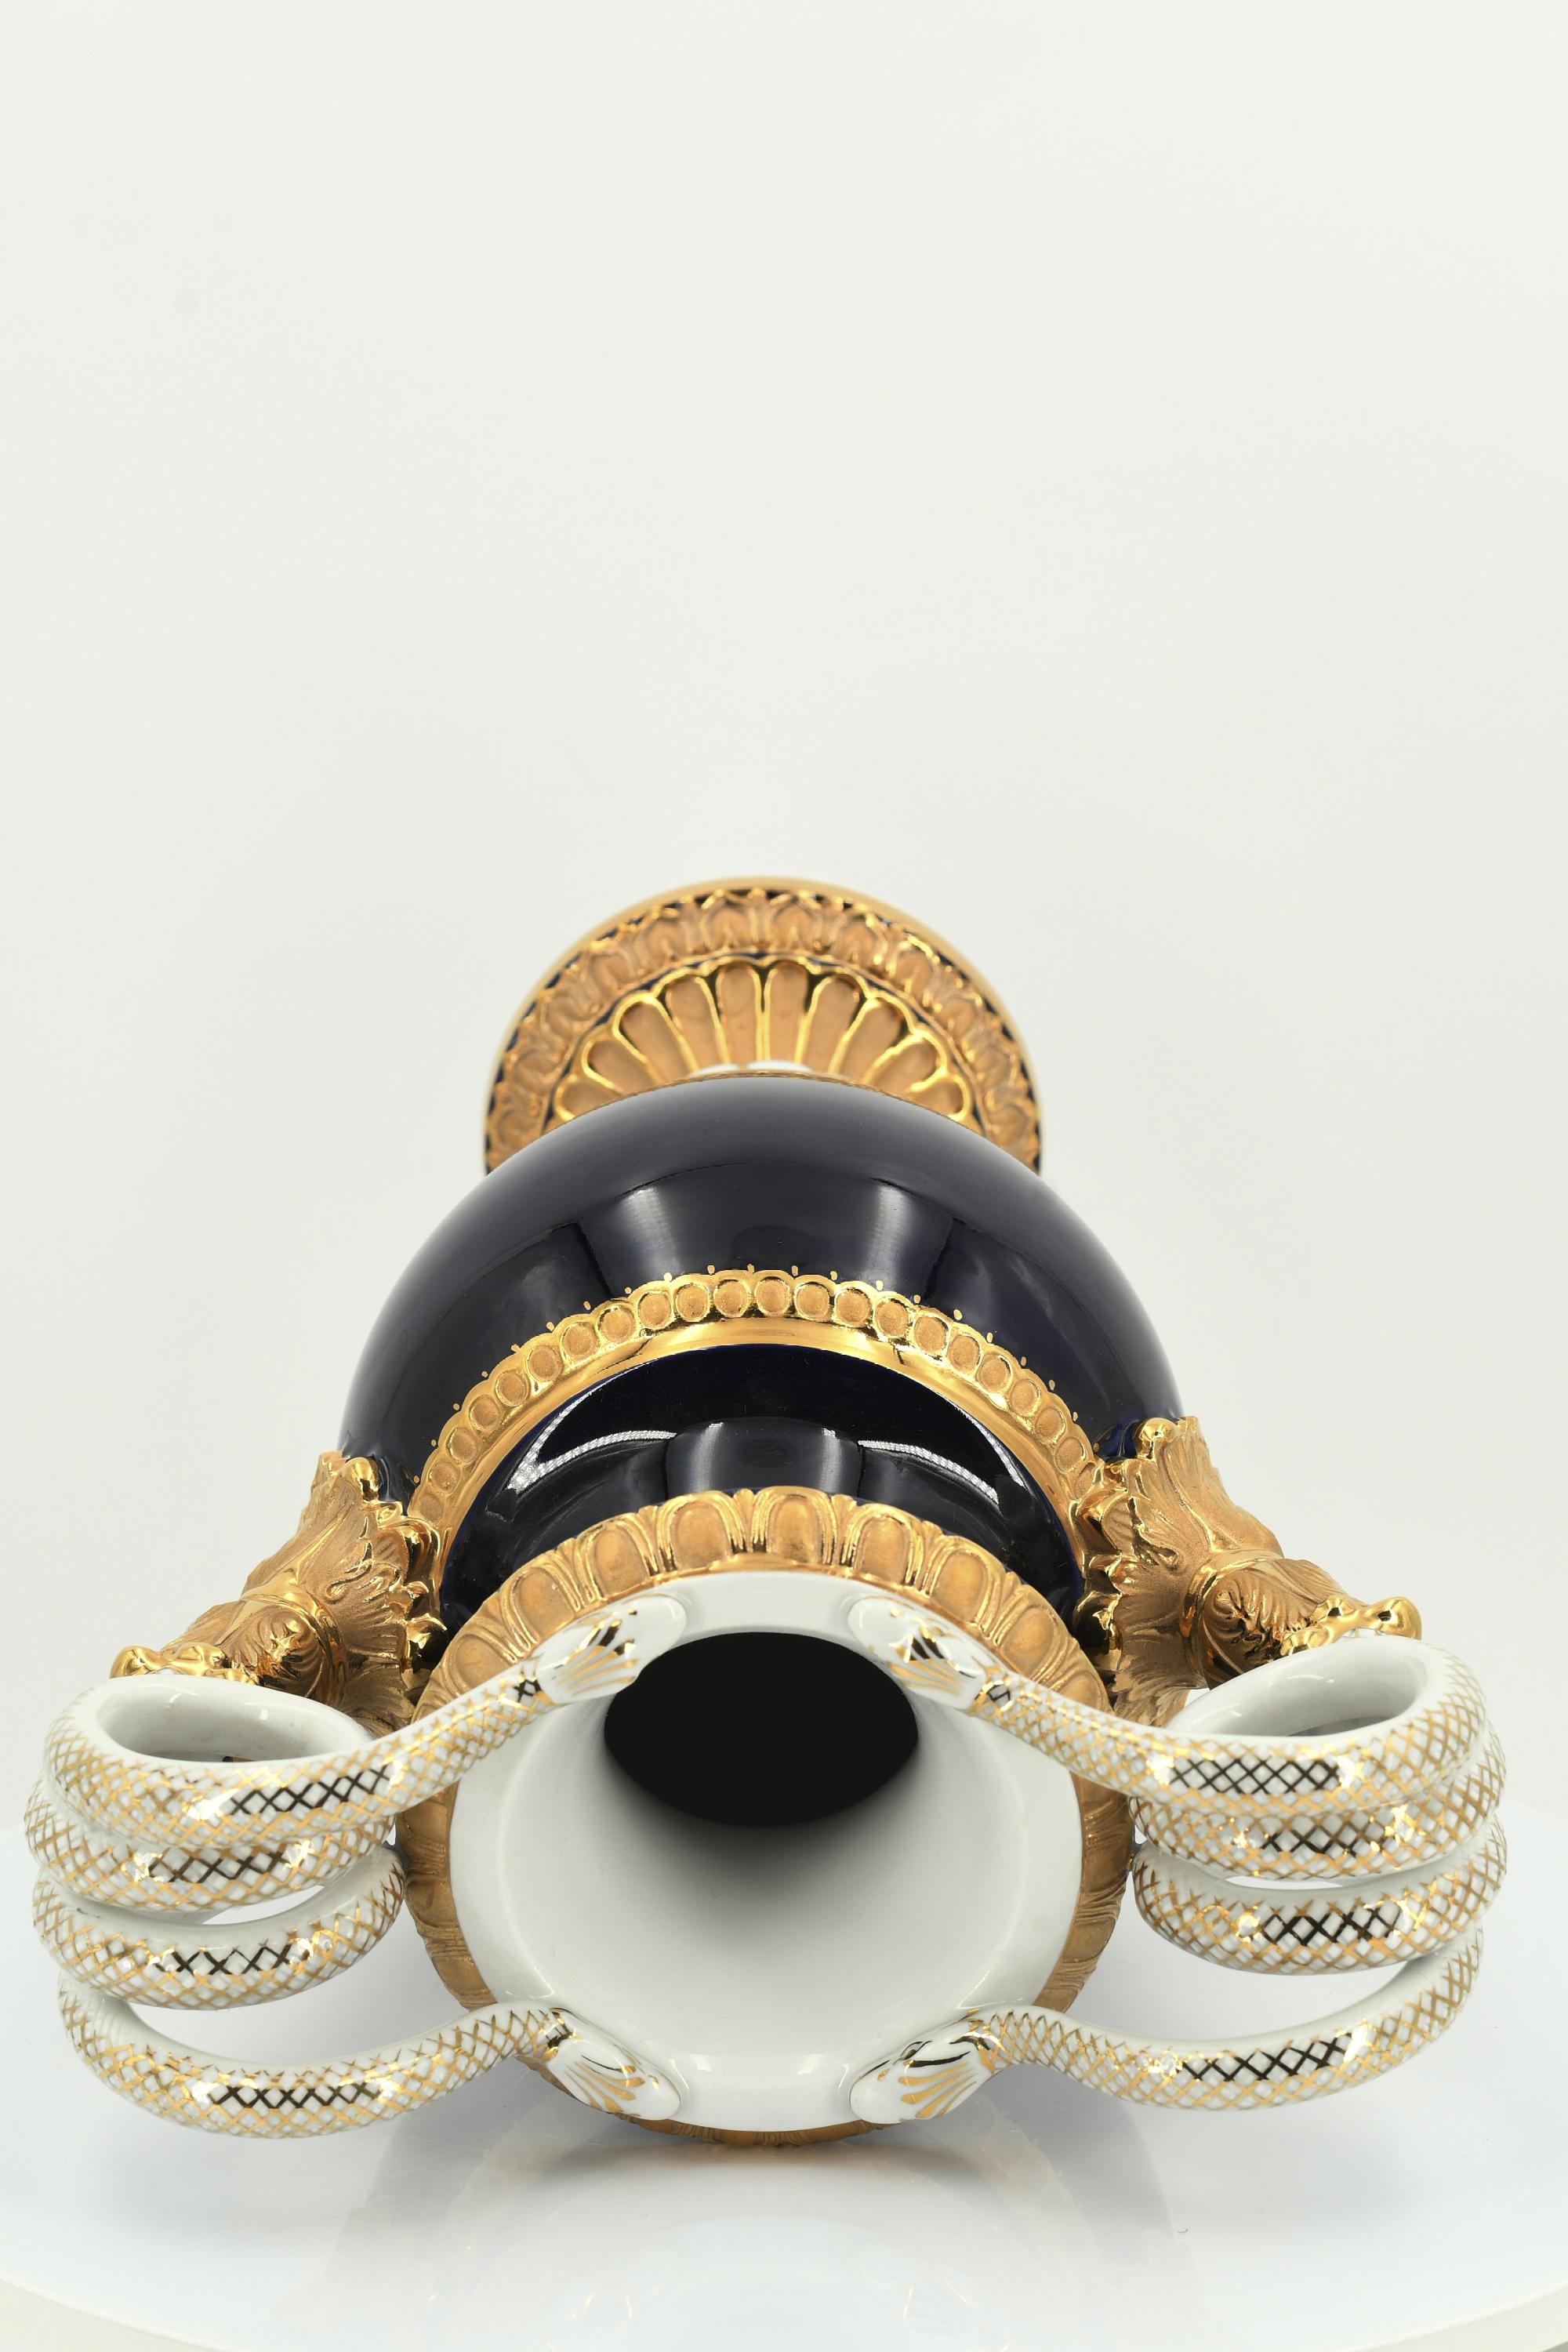 Small porcelain snake handle vase with cobalt blue fond - Image 6 of 13